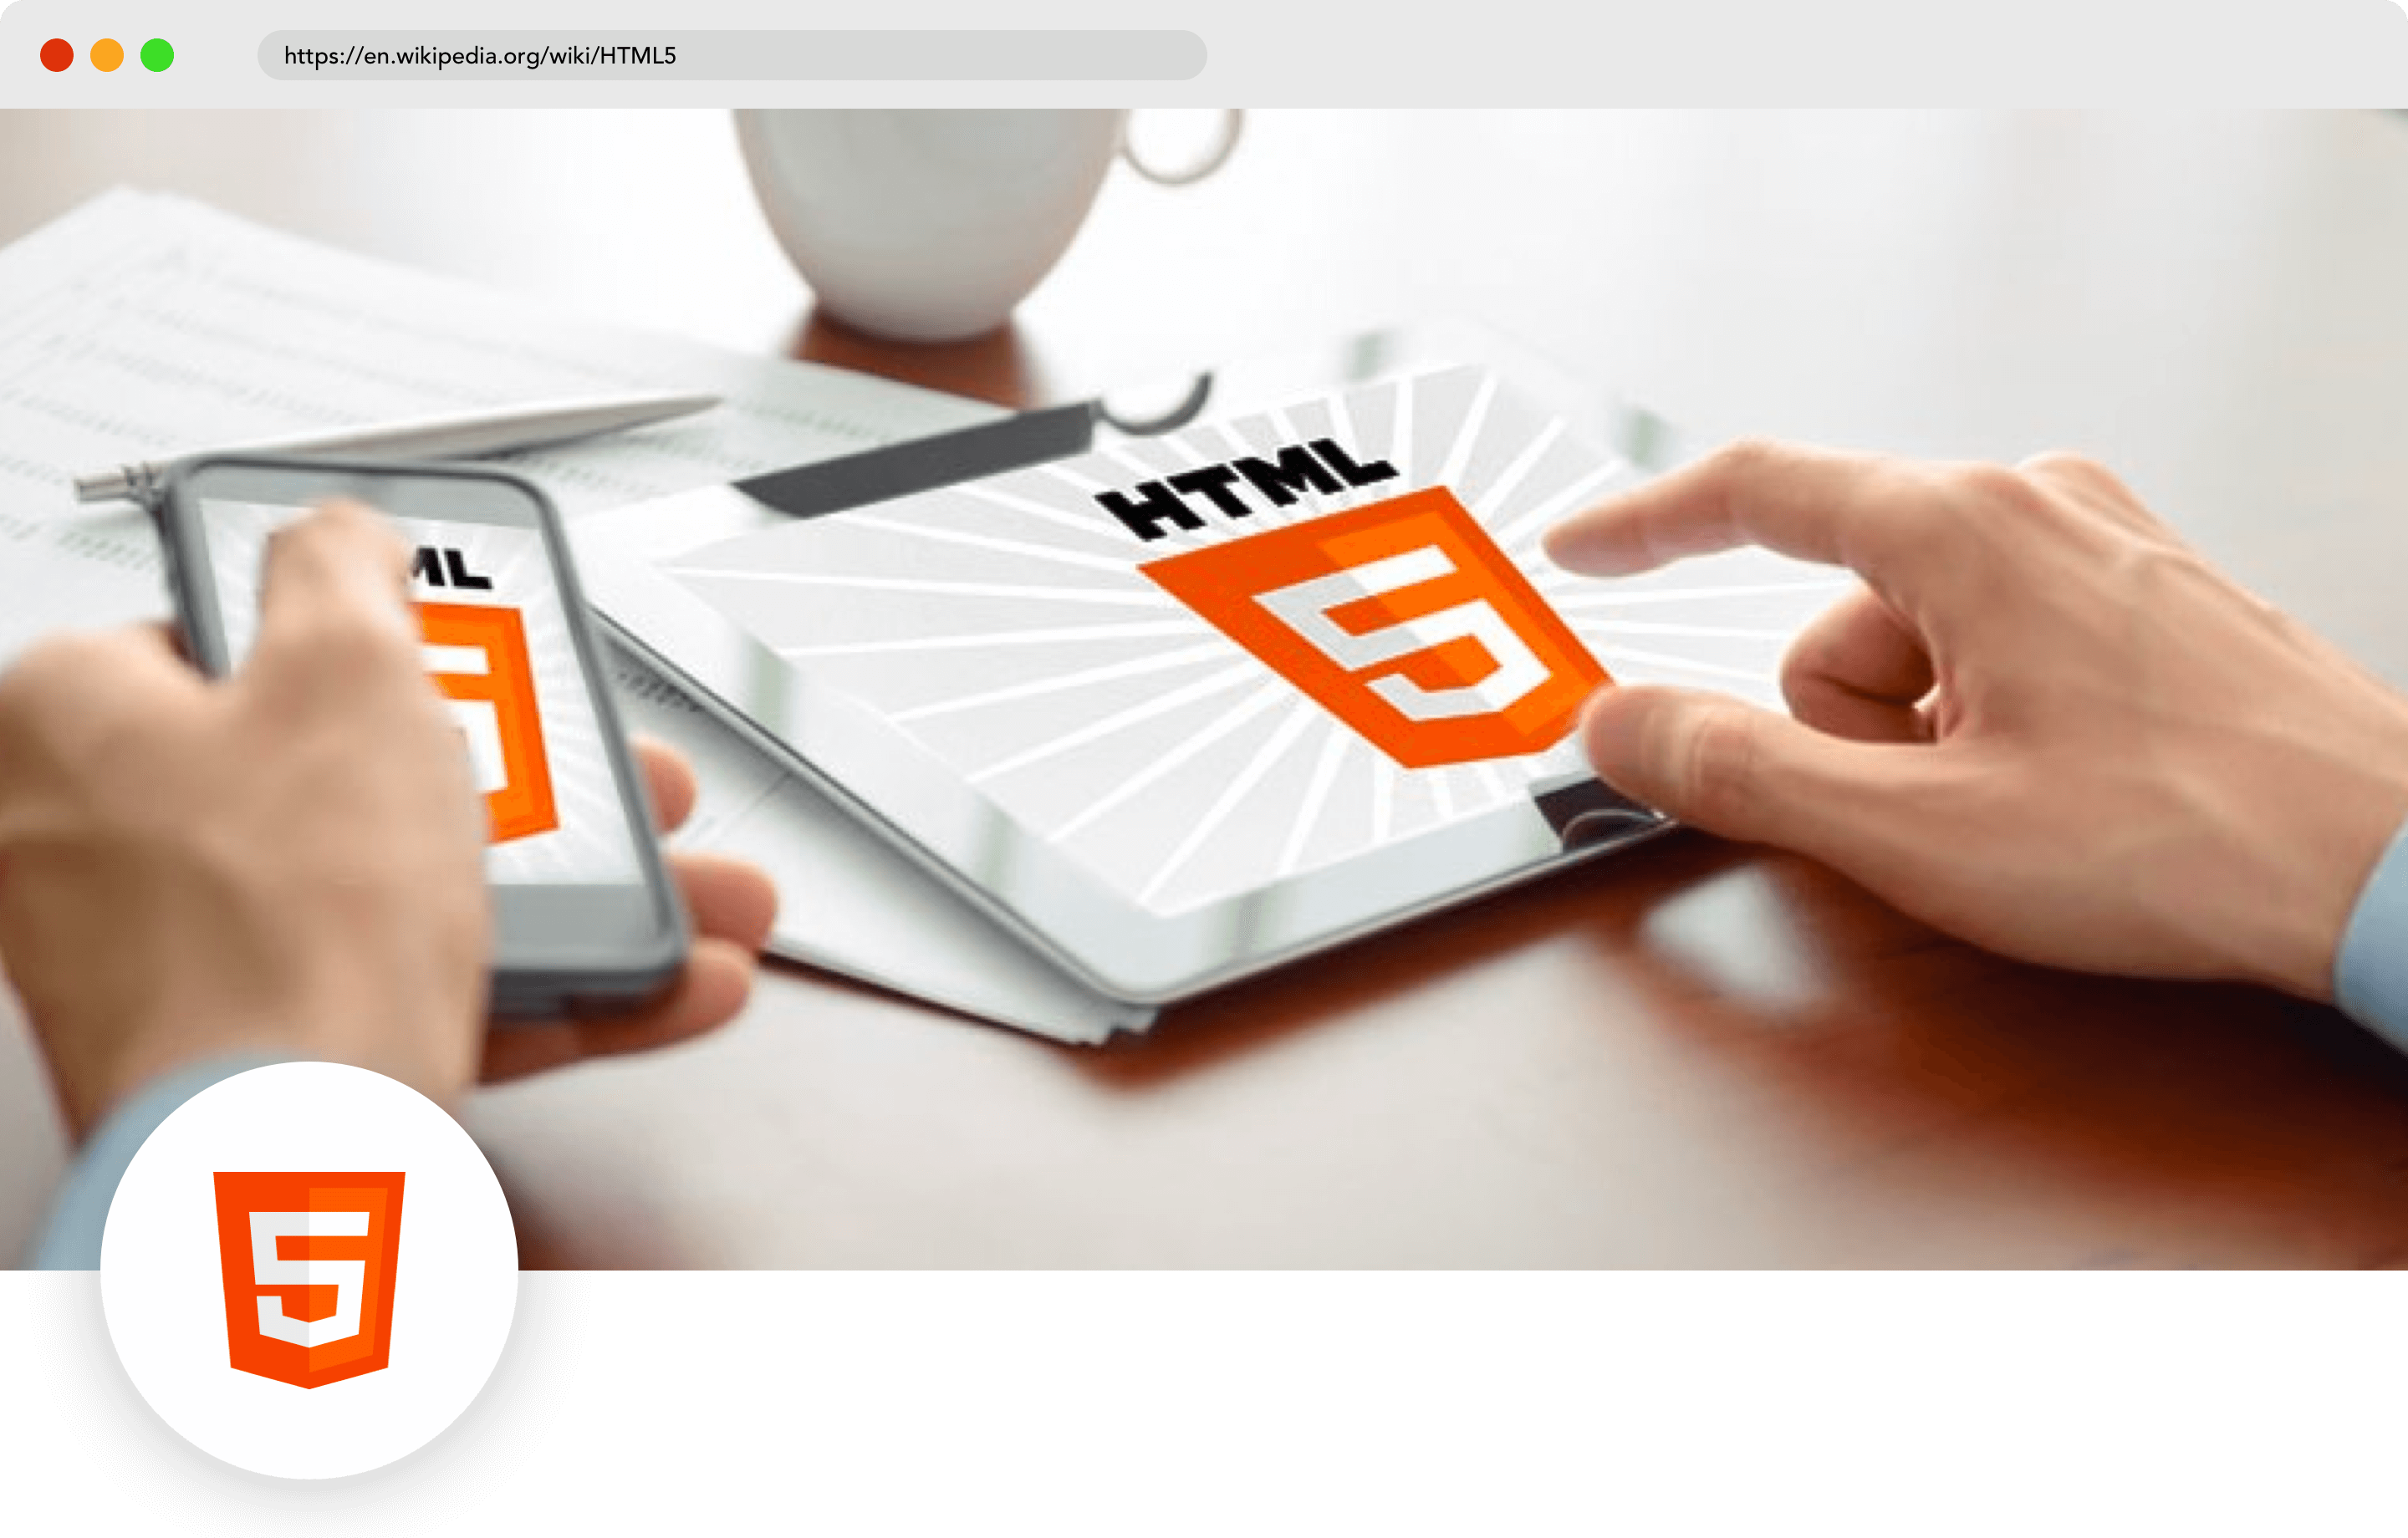 HTML 5 mobile programming language